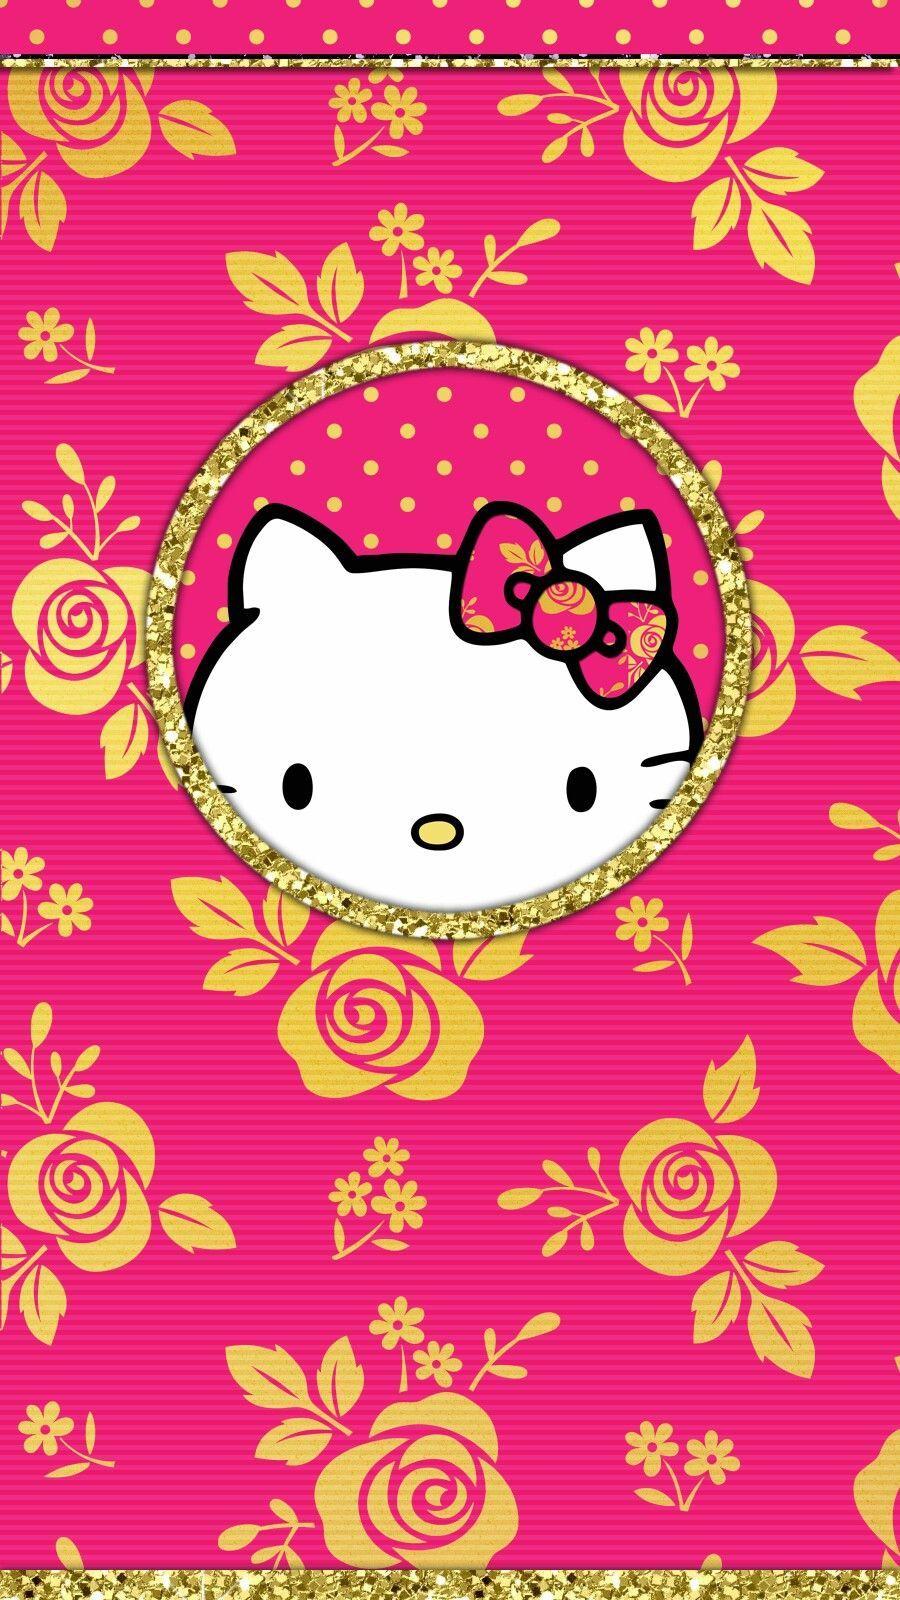 900x1600 vàng # ảnh chụp # liên kết # giấy dán tường # điện thoại.  Hình nền Hello kitty, Hình nền Hello kitty, Hình nền Kitty